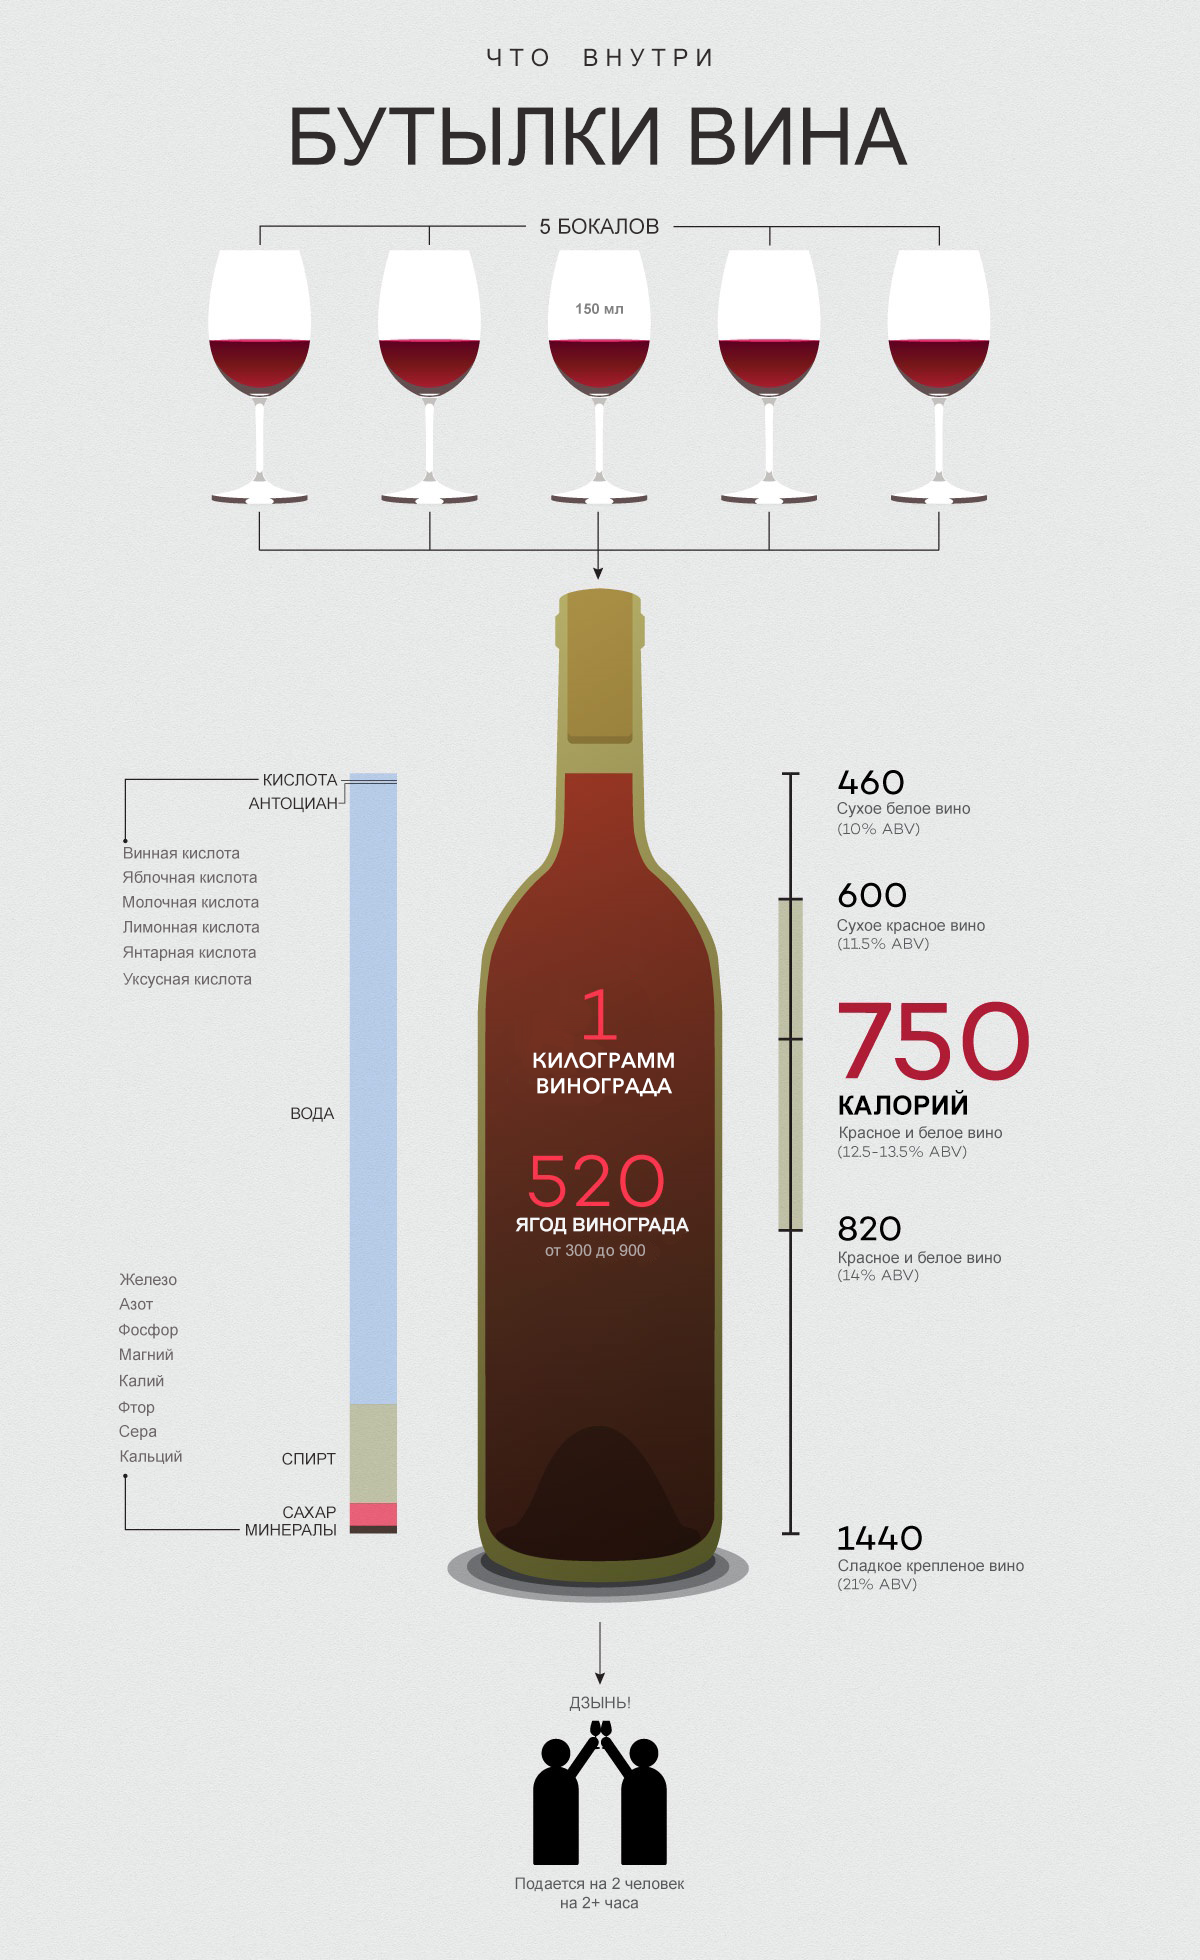 Сухое вино калорийность бутылки 750 мл. Вино 0.75 градусы. Сколько грамм в бутылке вина 750 мл. 0.75 Сухого вина калорий в бутылке.